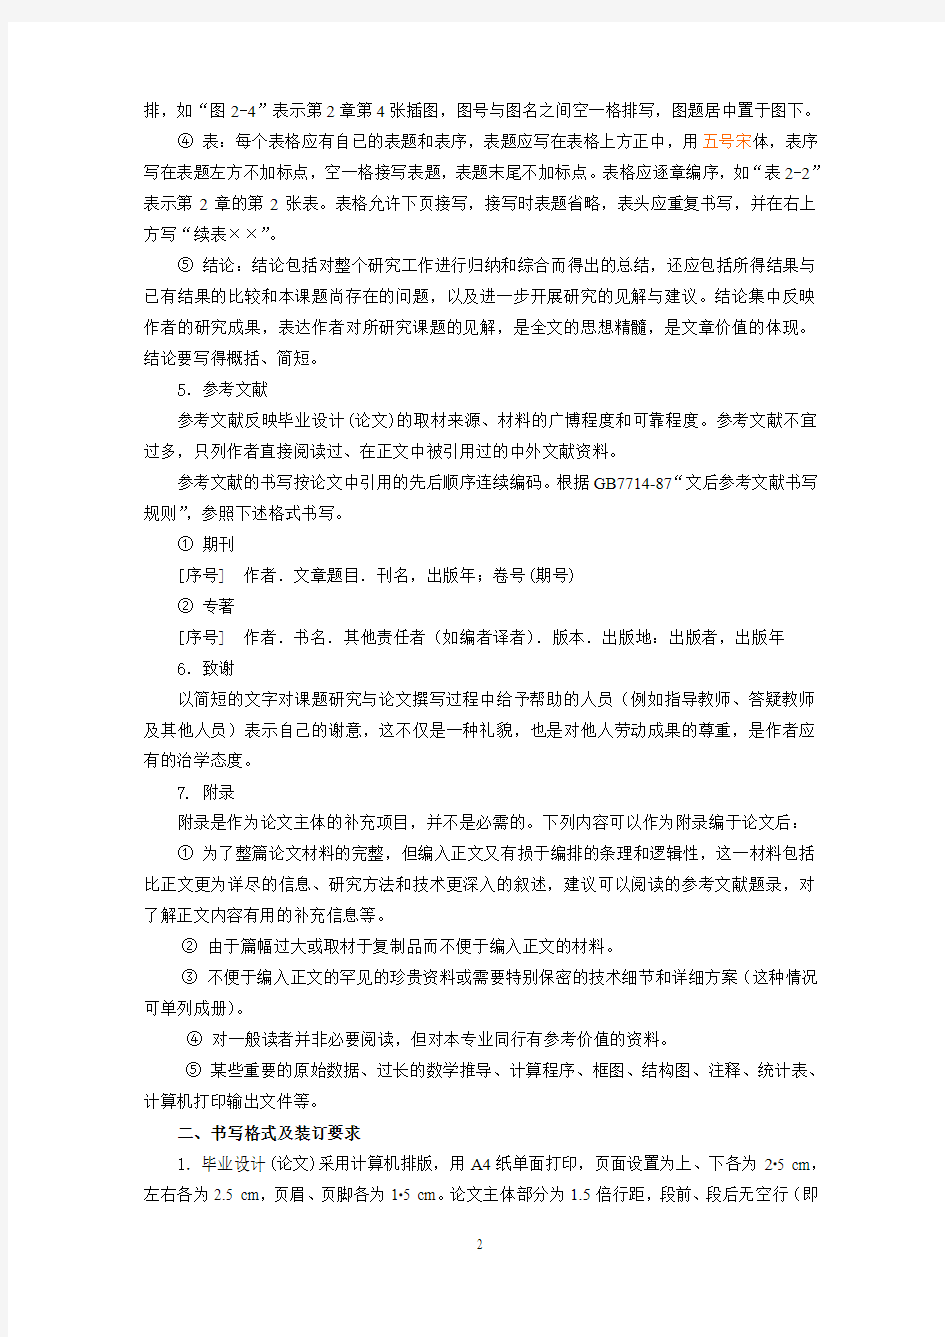 中国石油大学(华东)现代远程教育毕业设计(论文)基本要求及写作格式